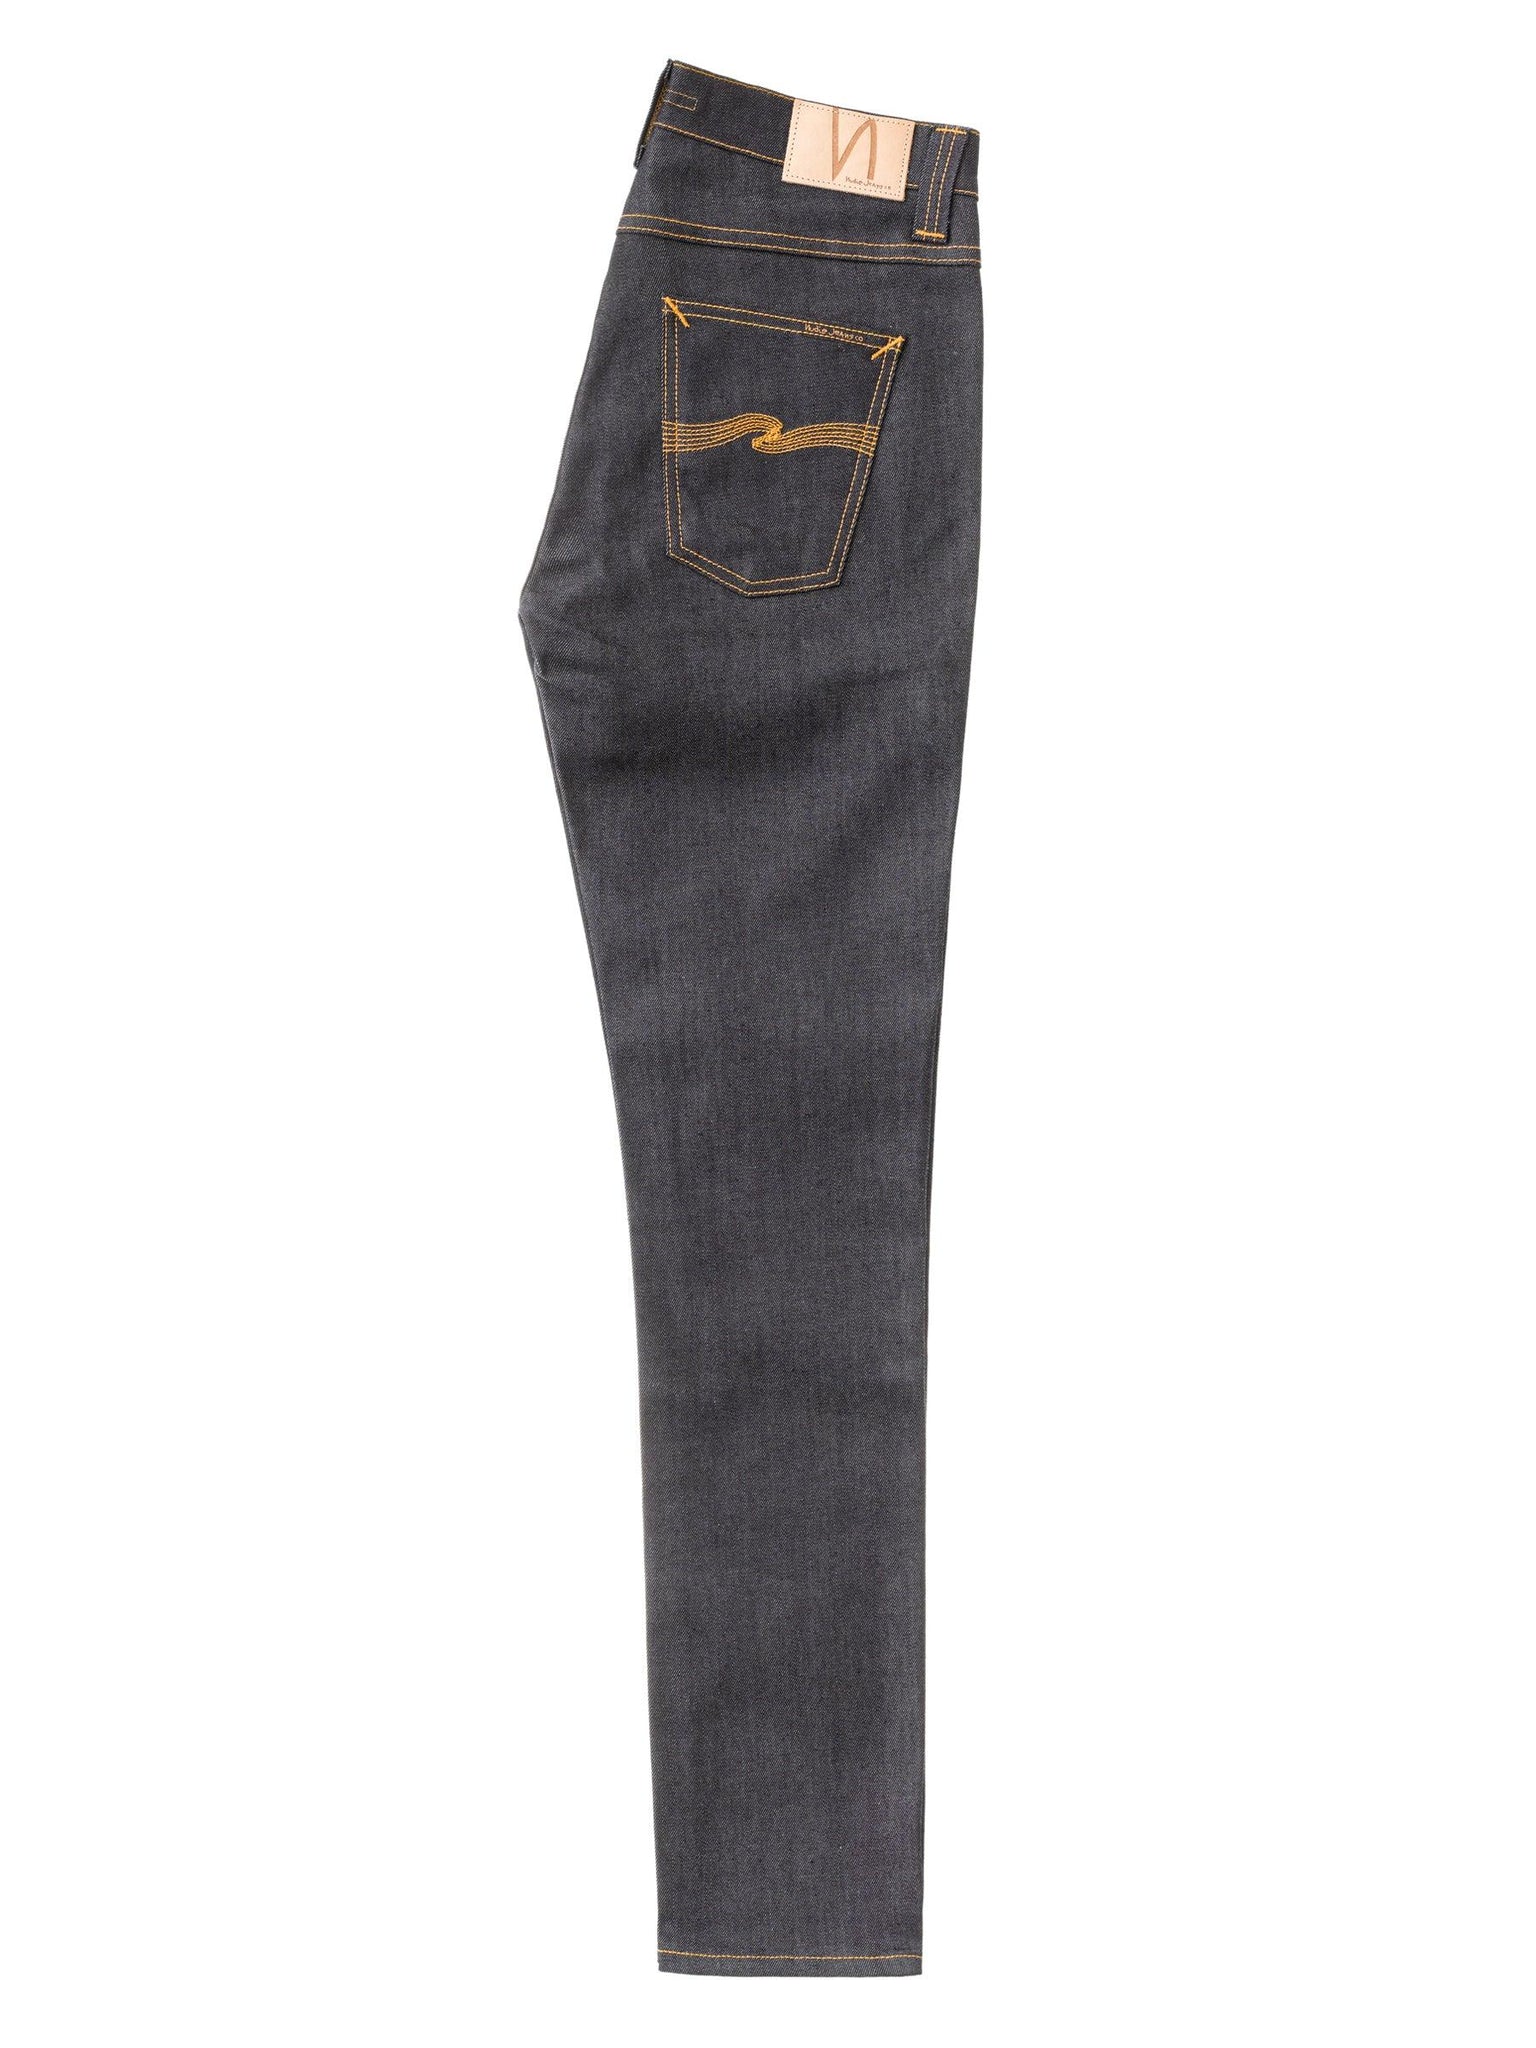 LEAN DEAN Dry 16 Dips - INHABIT - Exclusive Stockist of Nudie Jeans